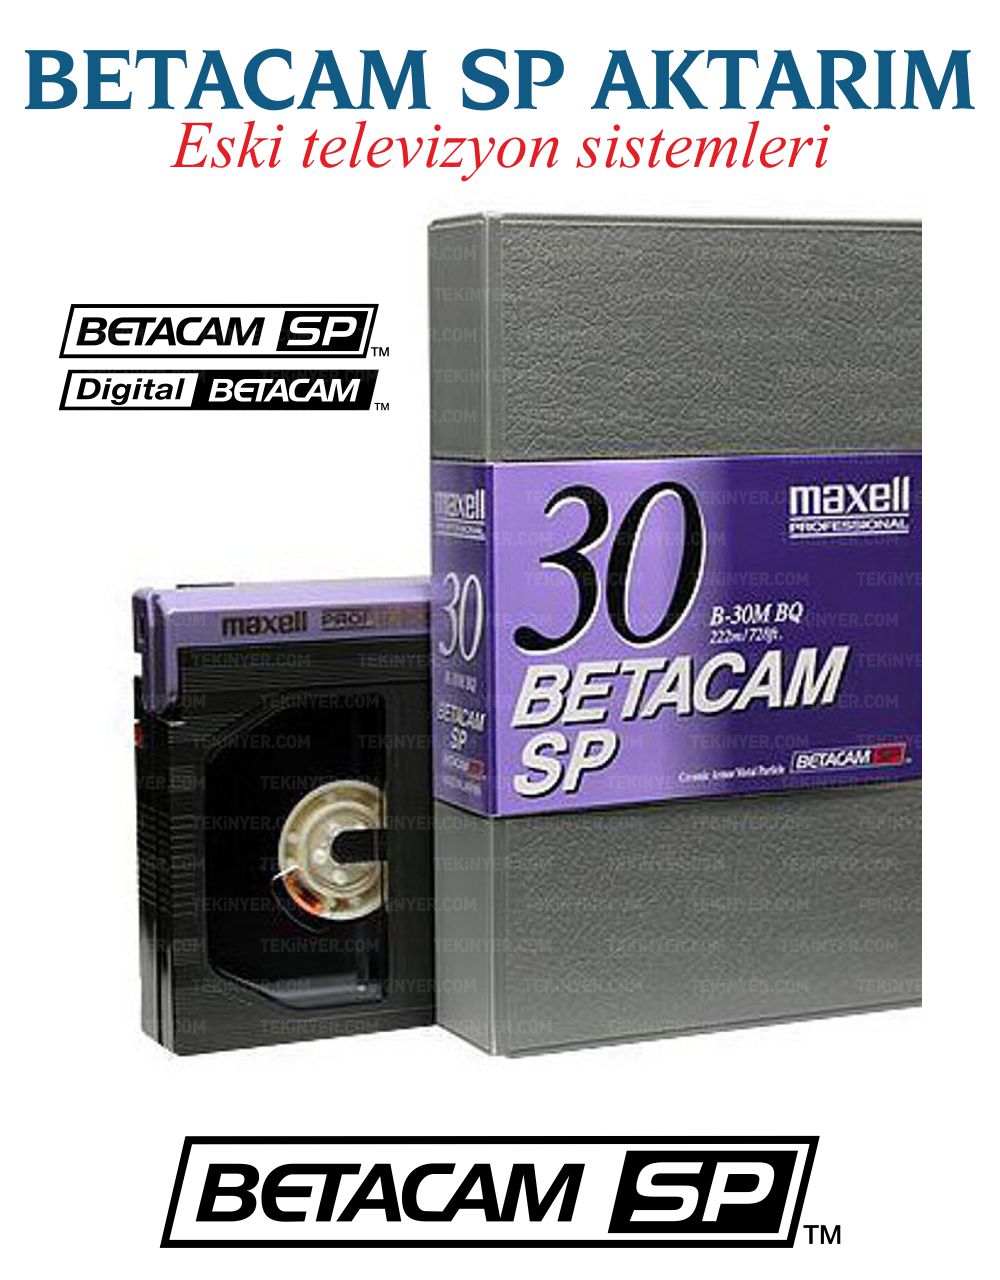 BetaCAM SP/ Dijital